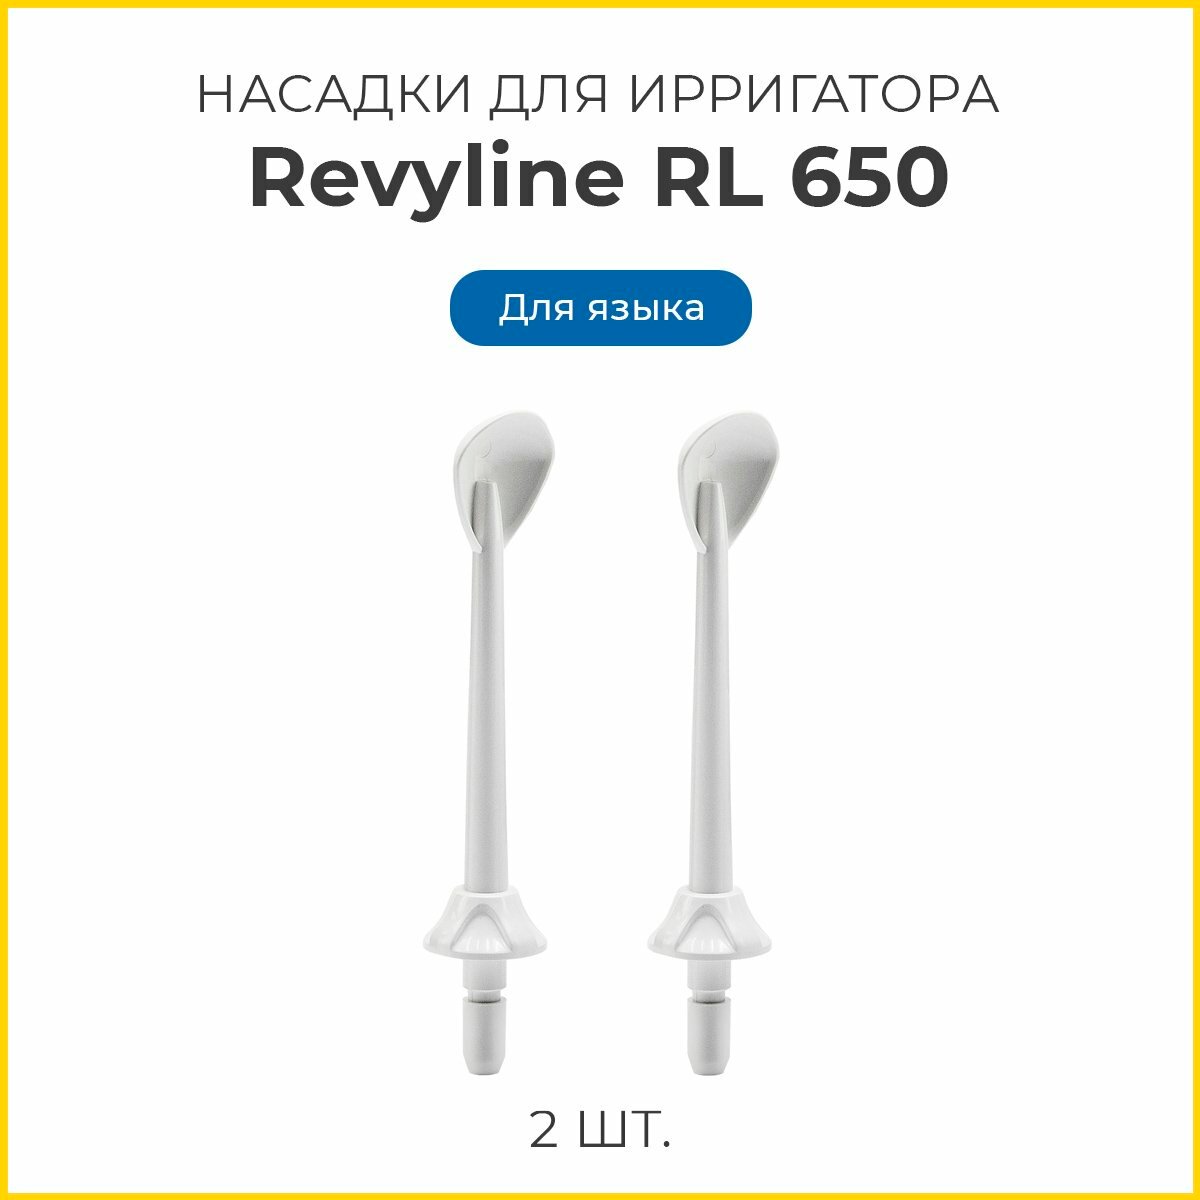 Сменные насадки для ирригатора Revyline RL 650 для языка, белые, 2 шт, Ревилайн